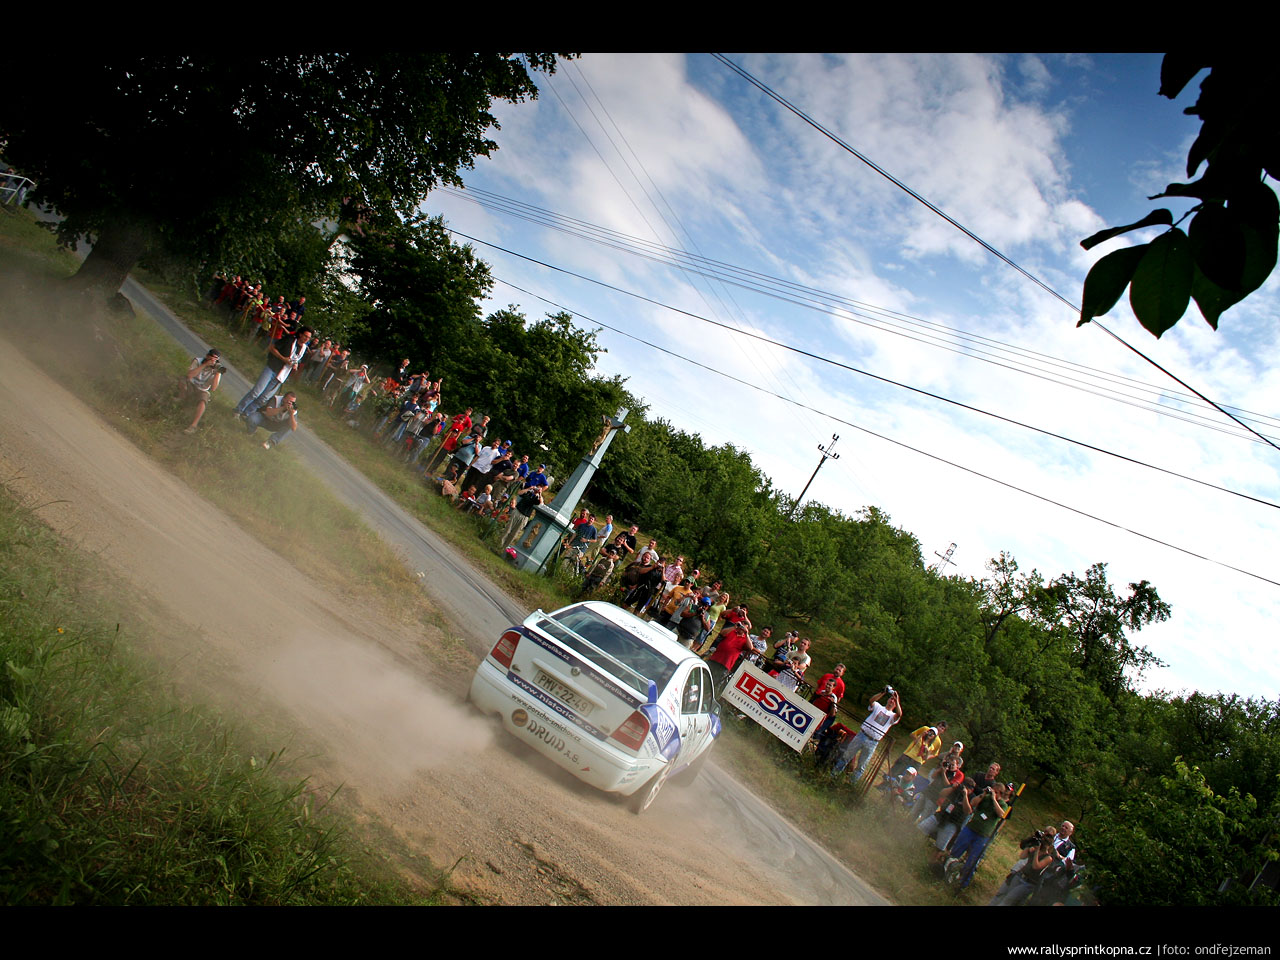 Rallysprint Kopná 2007